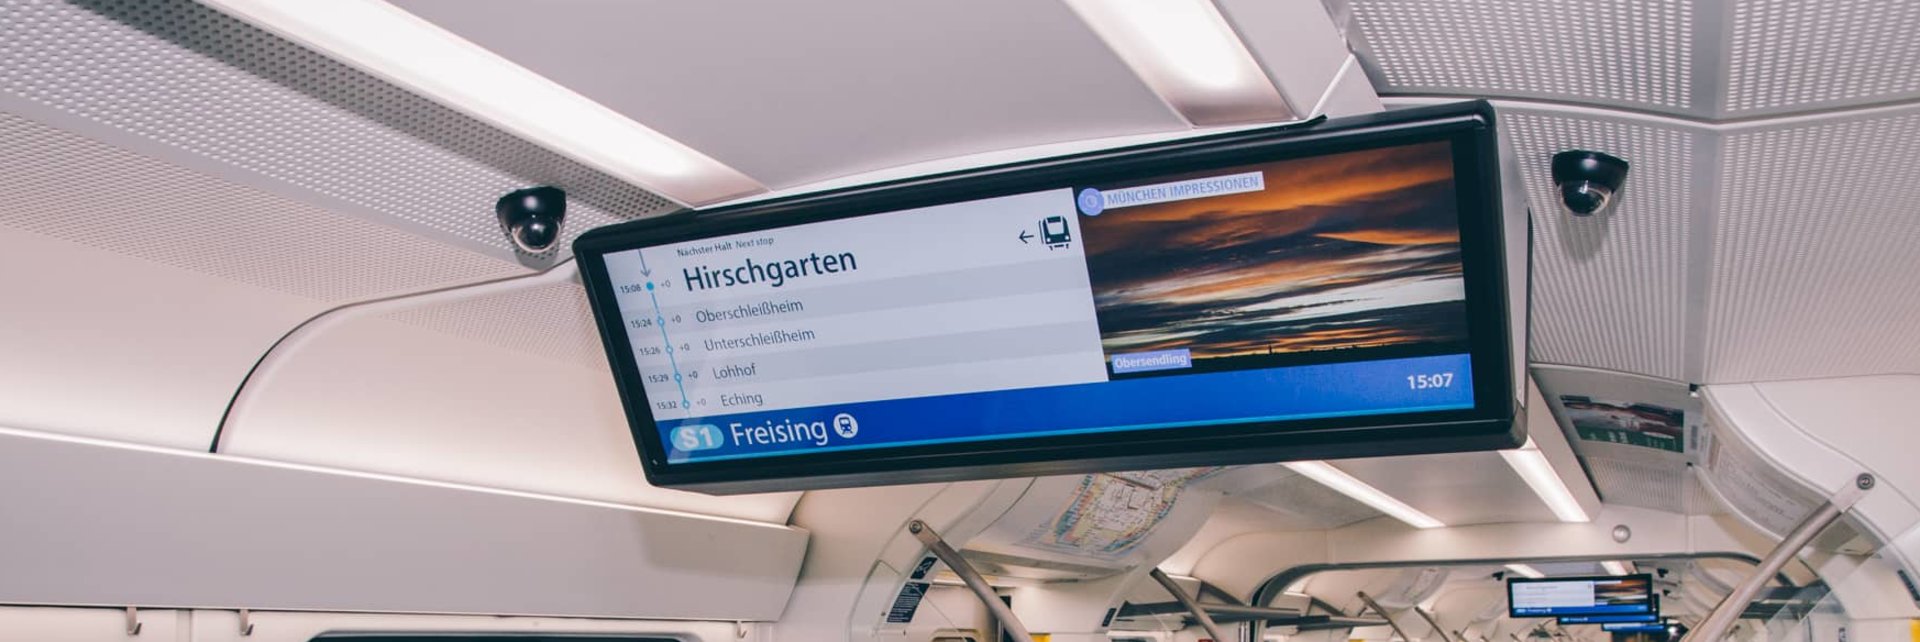 Innenansicht einer S-Bahn mit Deckenbildschirmen